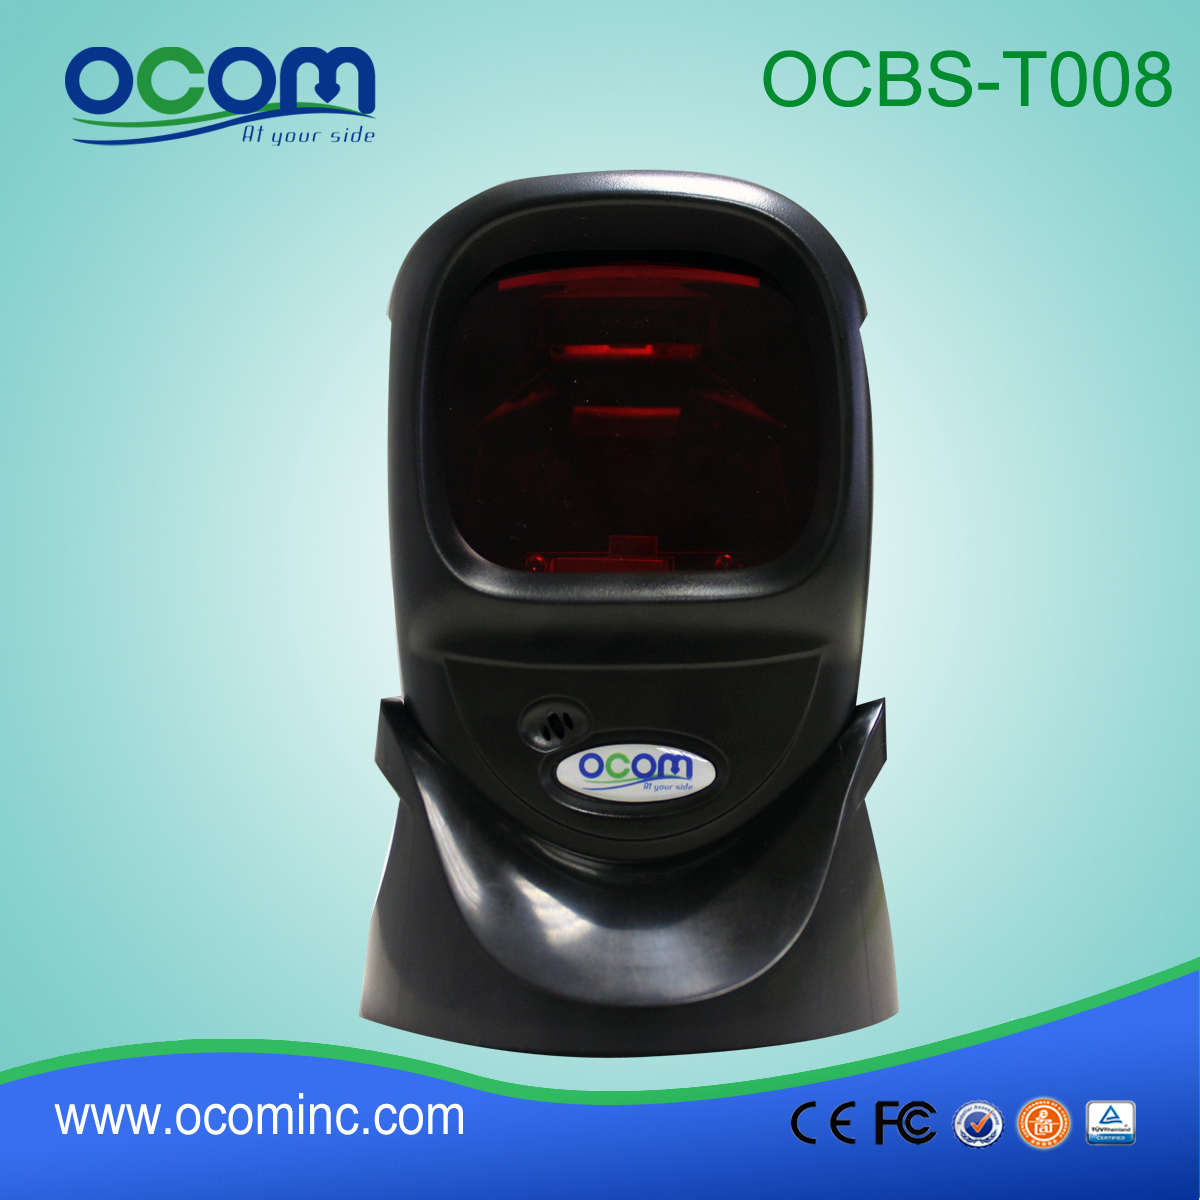 Scanner per codici a barre omnidirezionale desktop ad alta velocità di scansione (OCBS -T008)